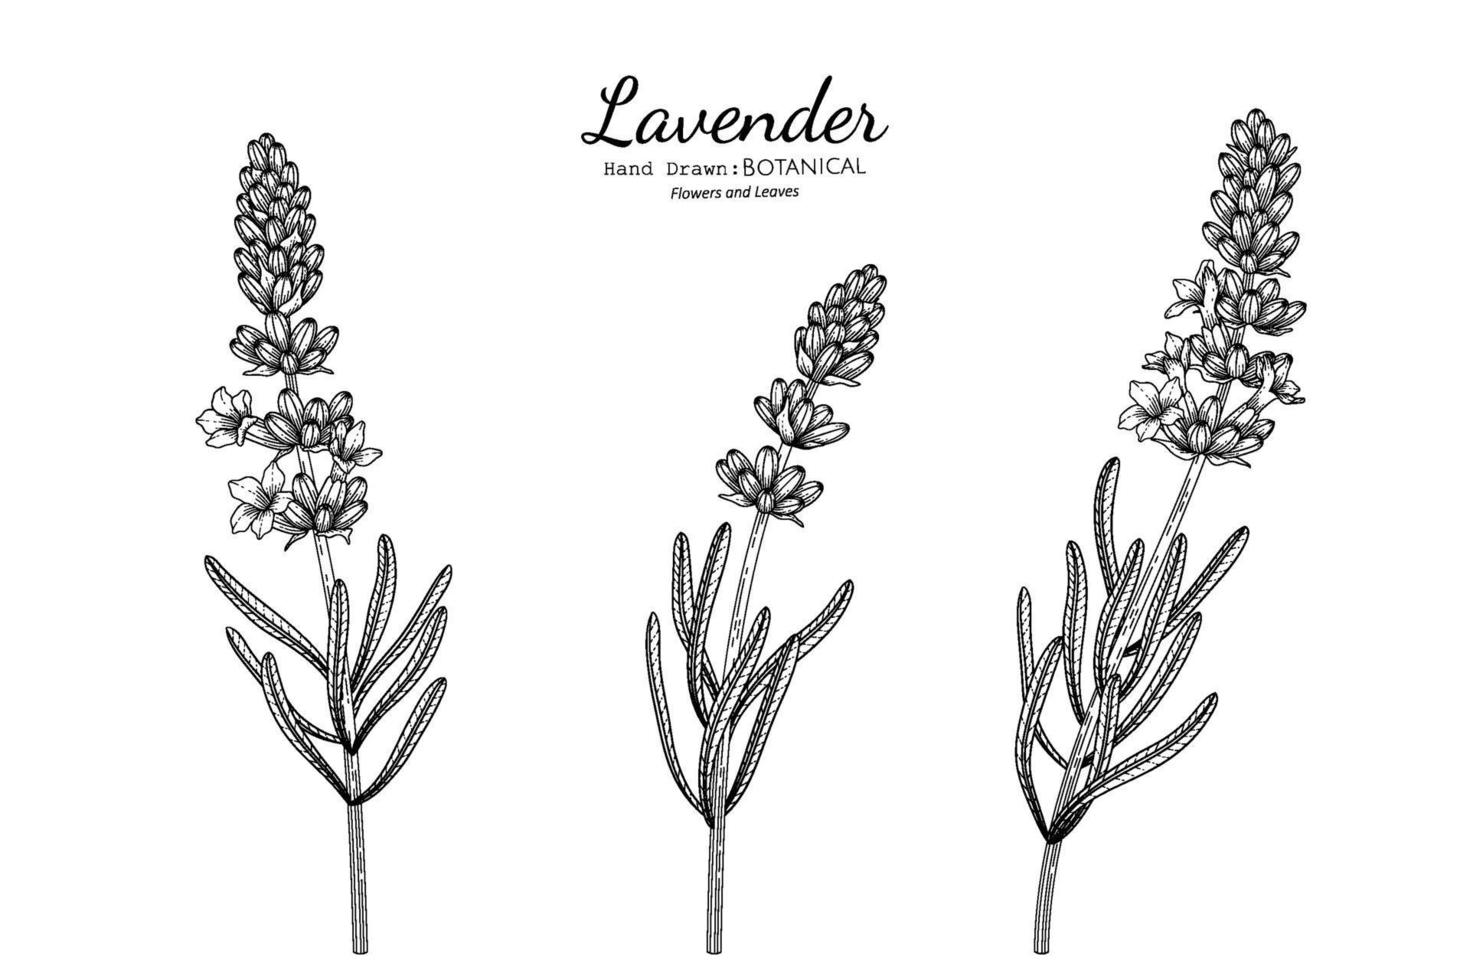 Lavender flower and leaf hand drawn botanical illustration with line art. vector